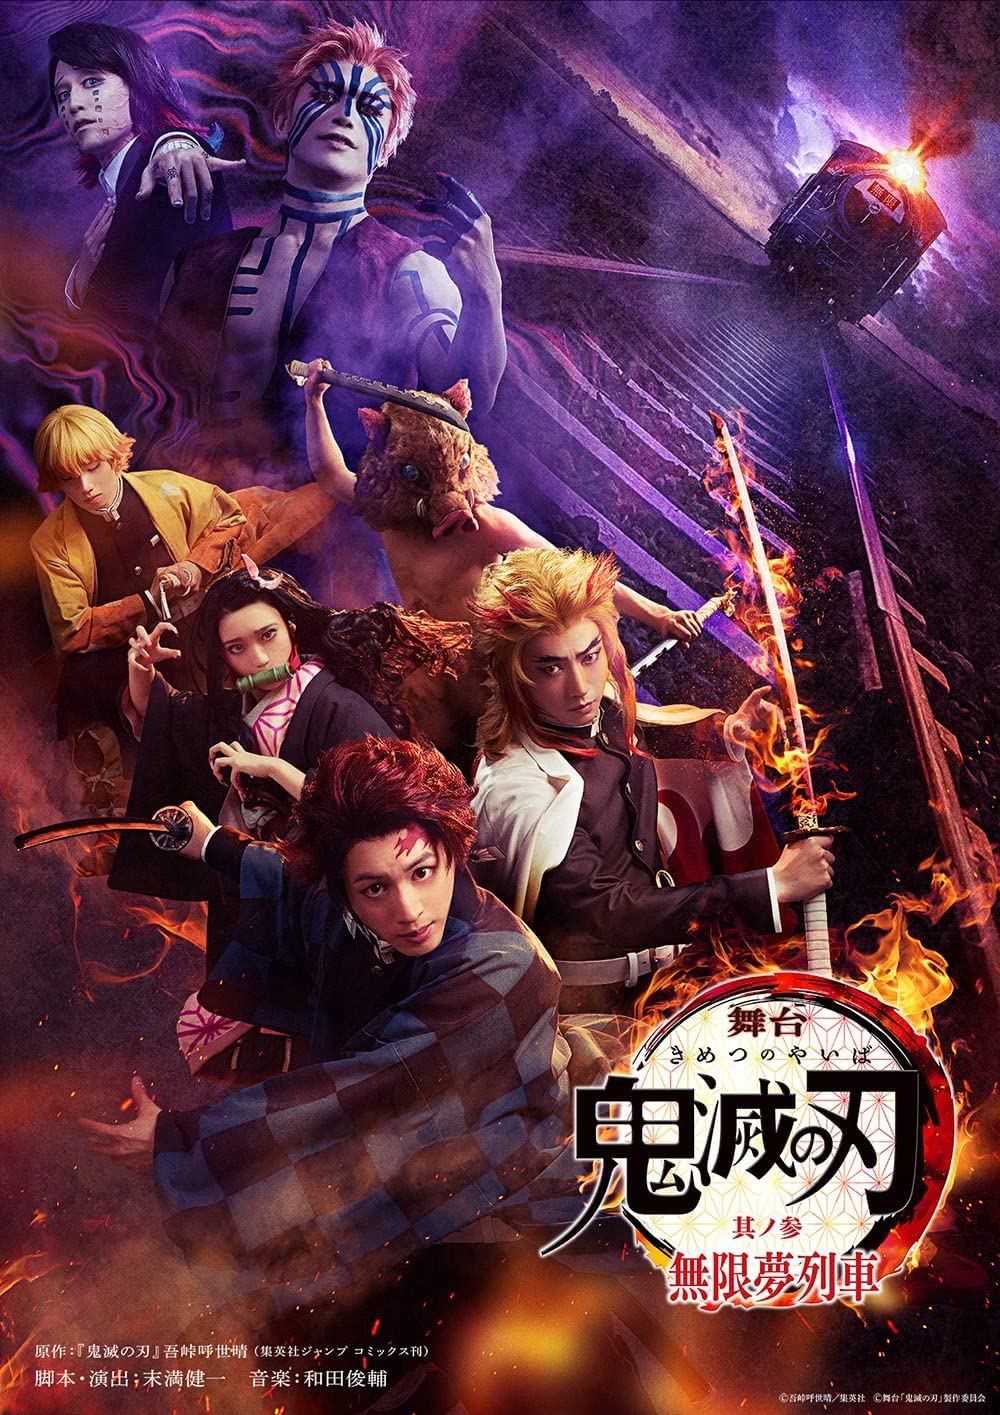 Blu-Ray de Kimetsu no Yaiba the Movie: Mugen Train será lançado em